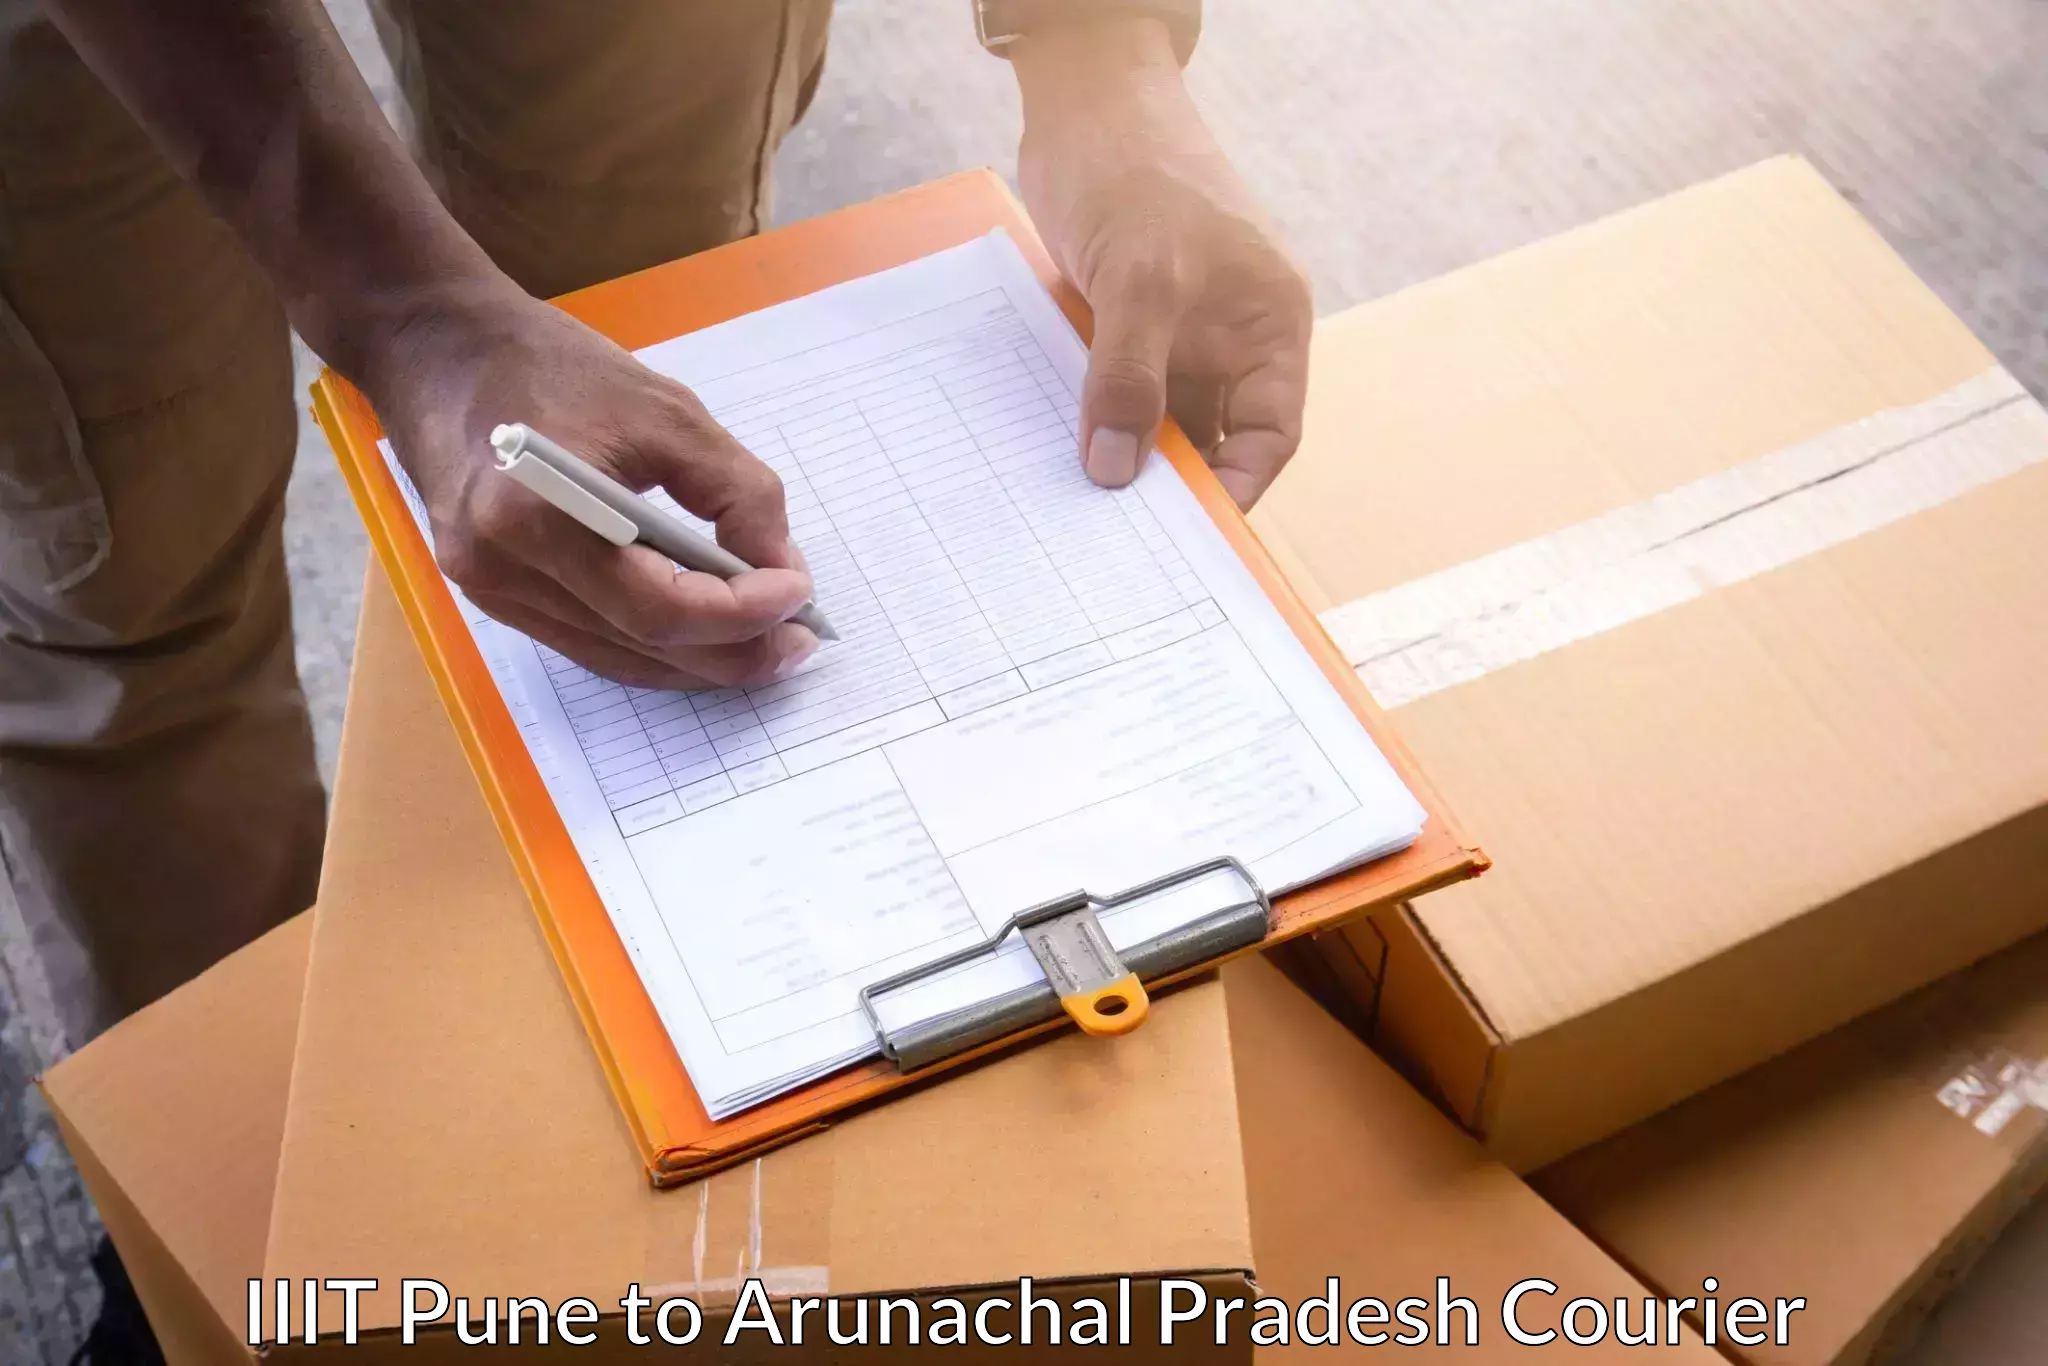 Courier dispatch services IIIT Pune to Arunachal Pradesh